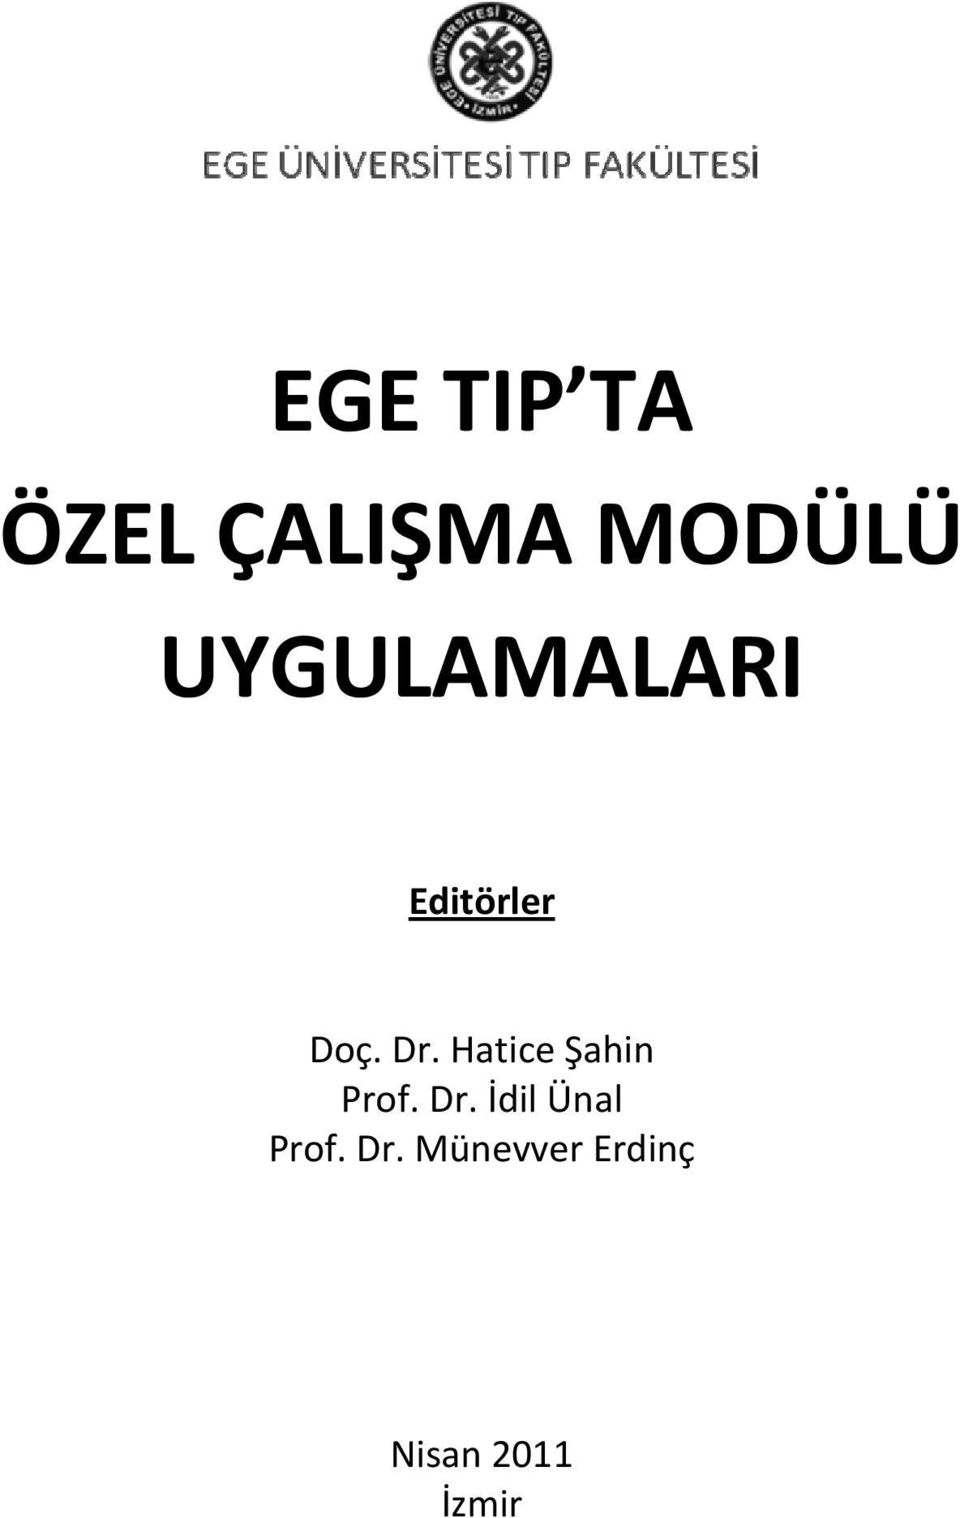 Hatice Şahin Prof. Dr.